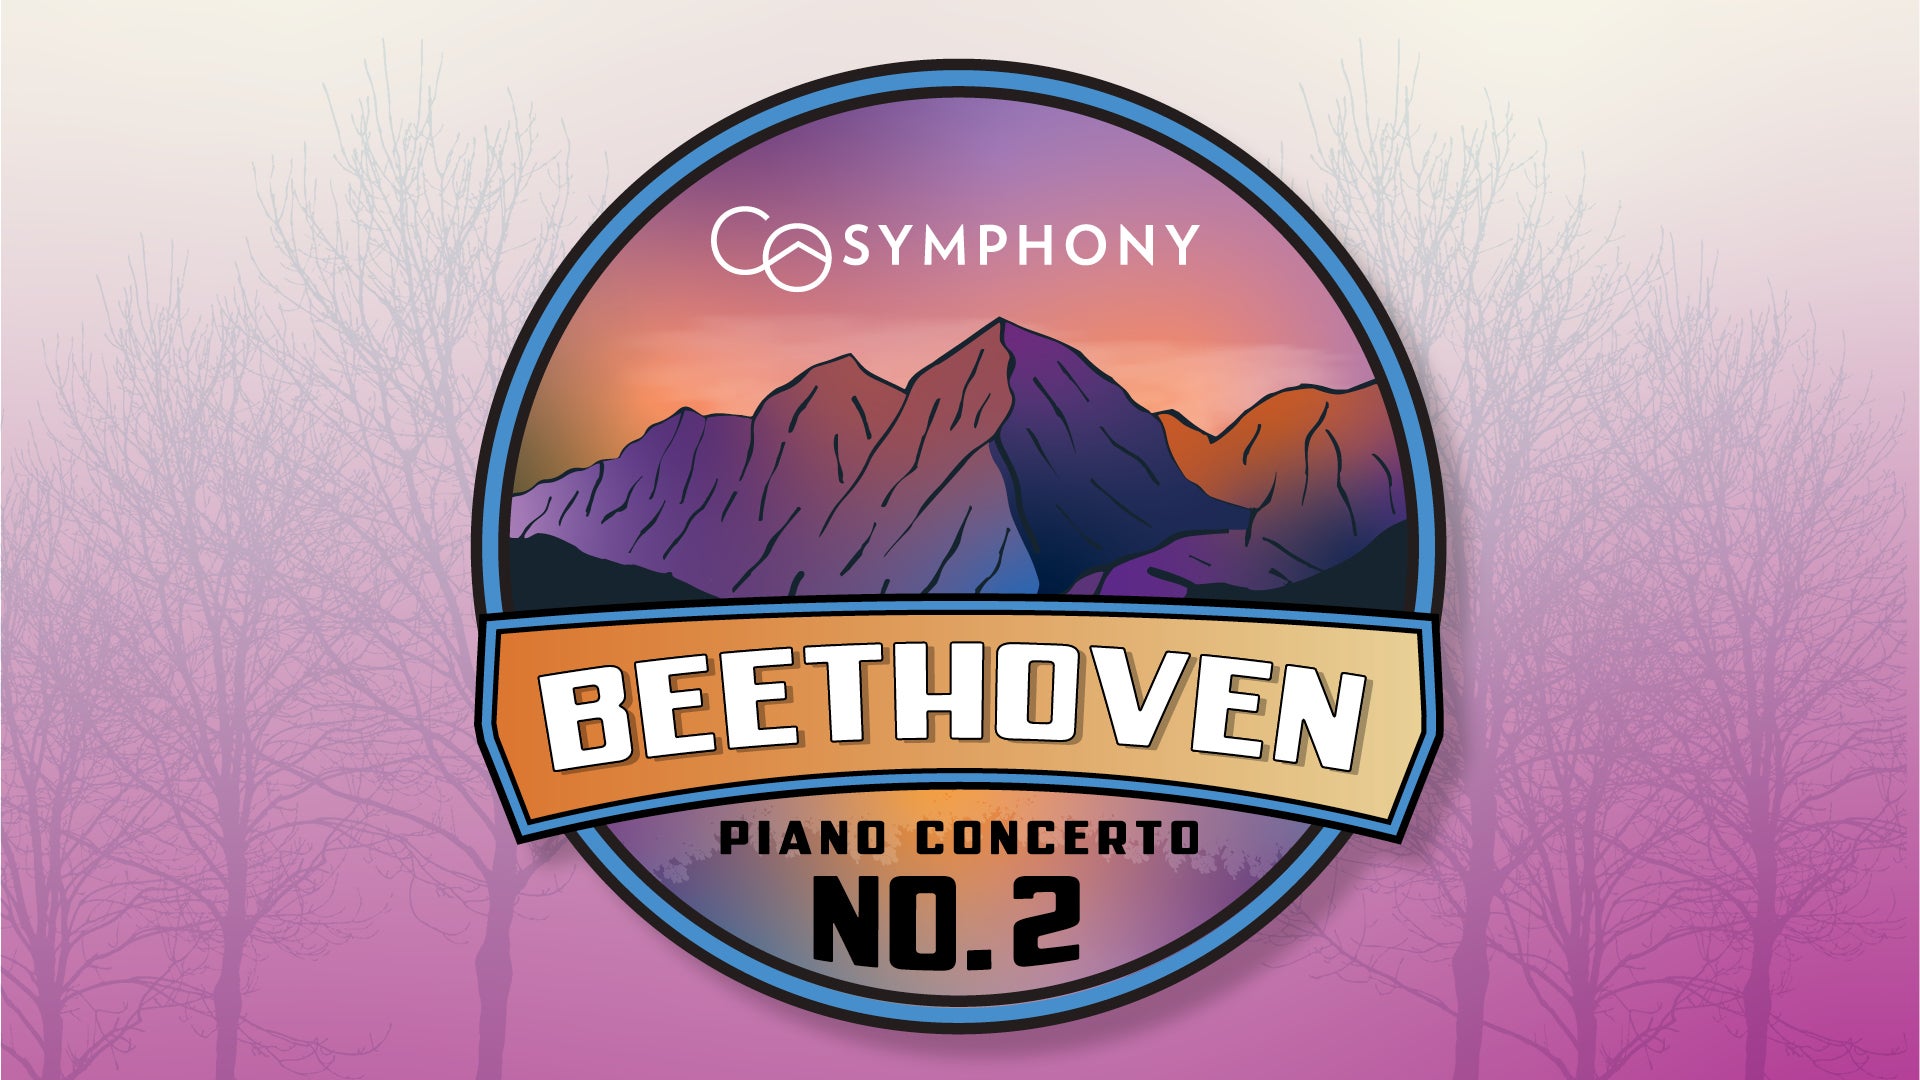 Beethoven Piano Concerto No. 2